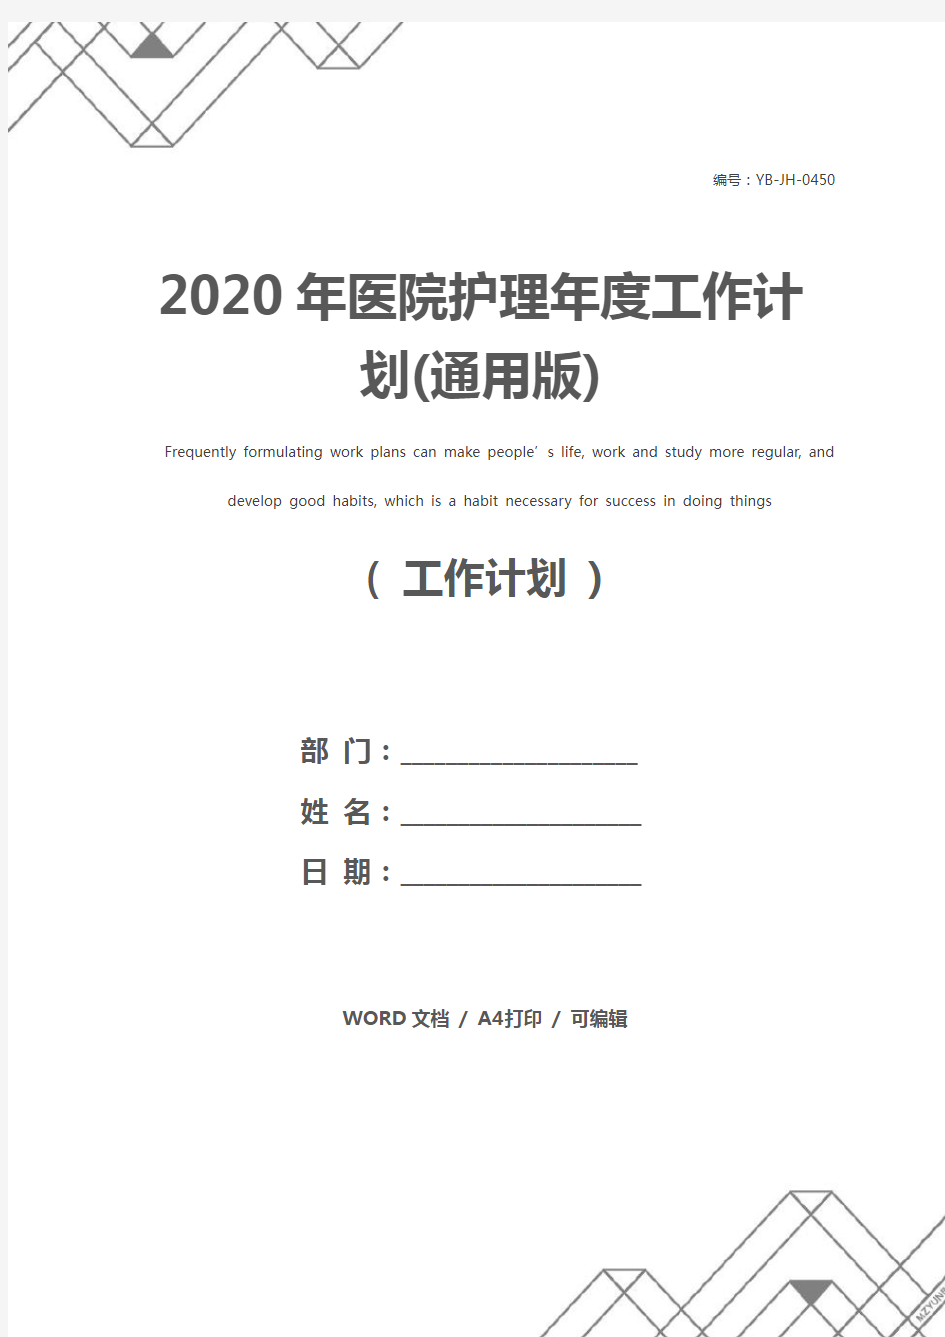 2020年医院护理年度工作计划(通用版)